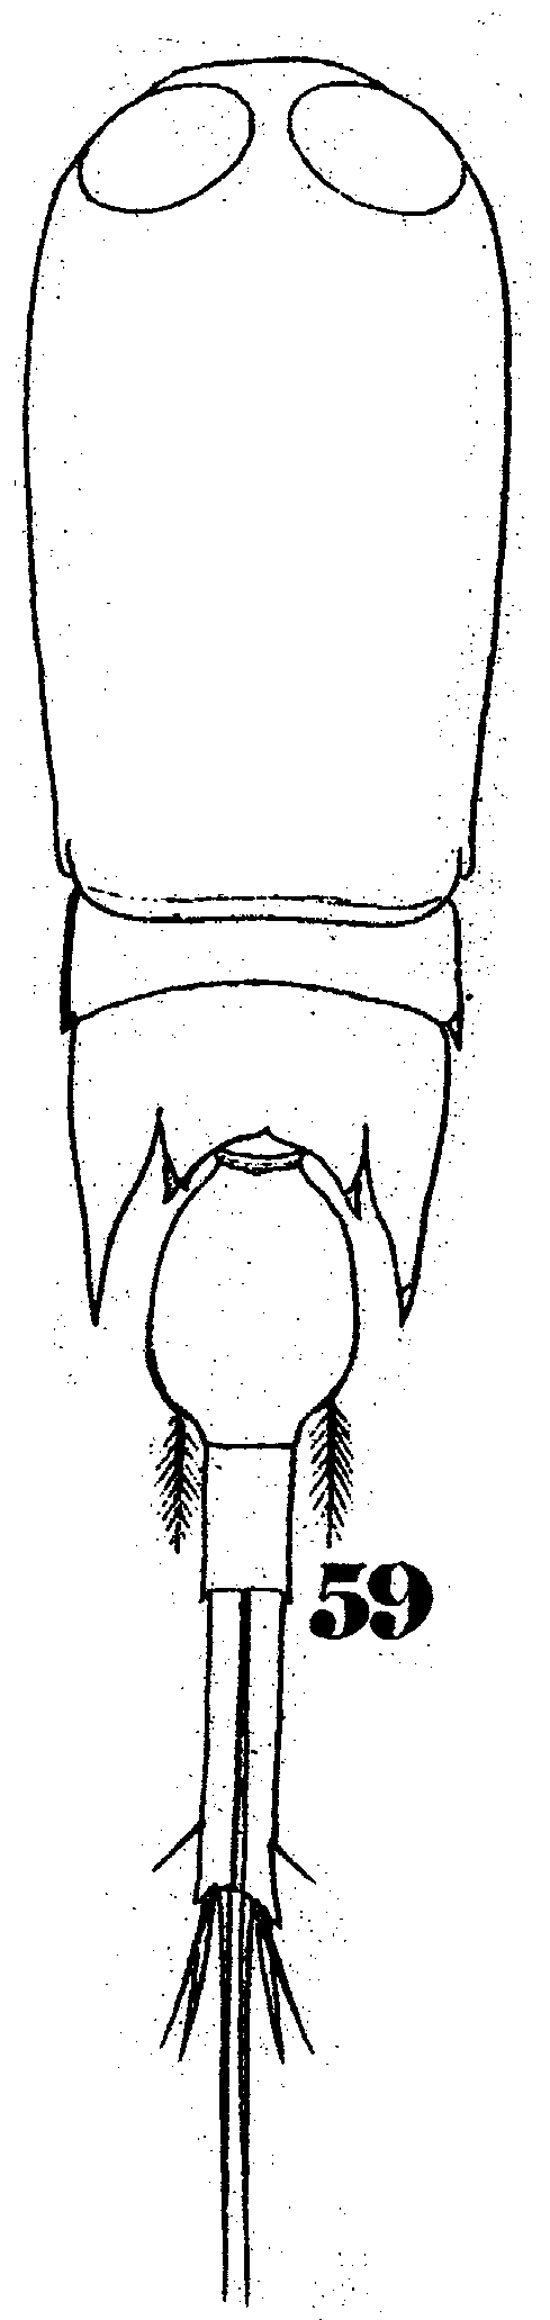 Espèce Corycaeus (Corycaeus) crassiusculus - Planche 7 de figures morphologiques